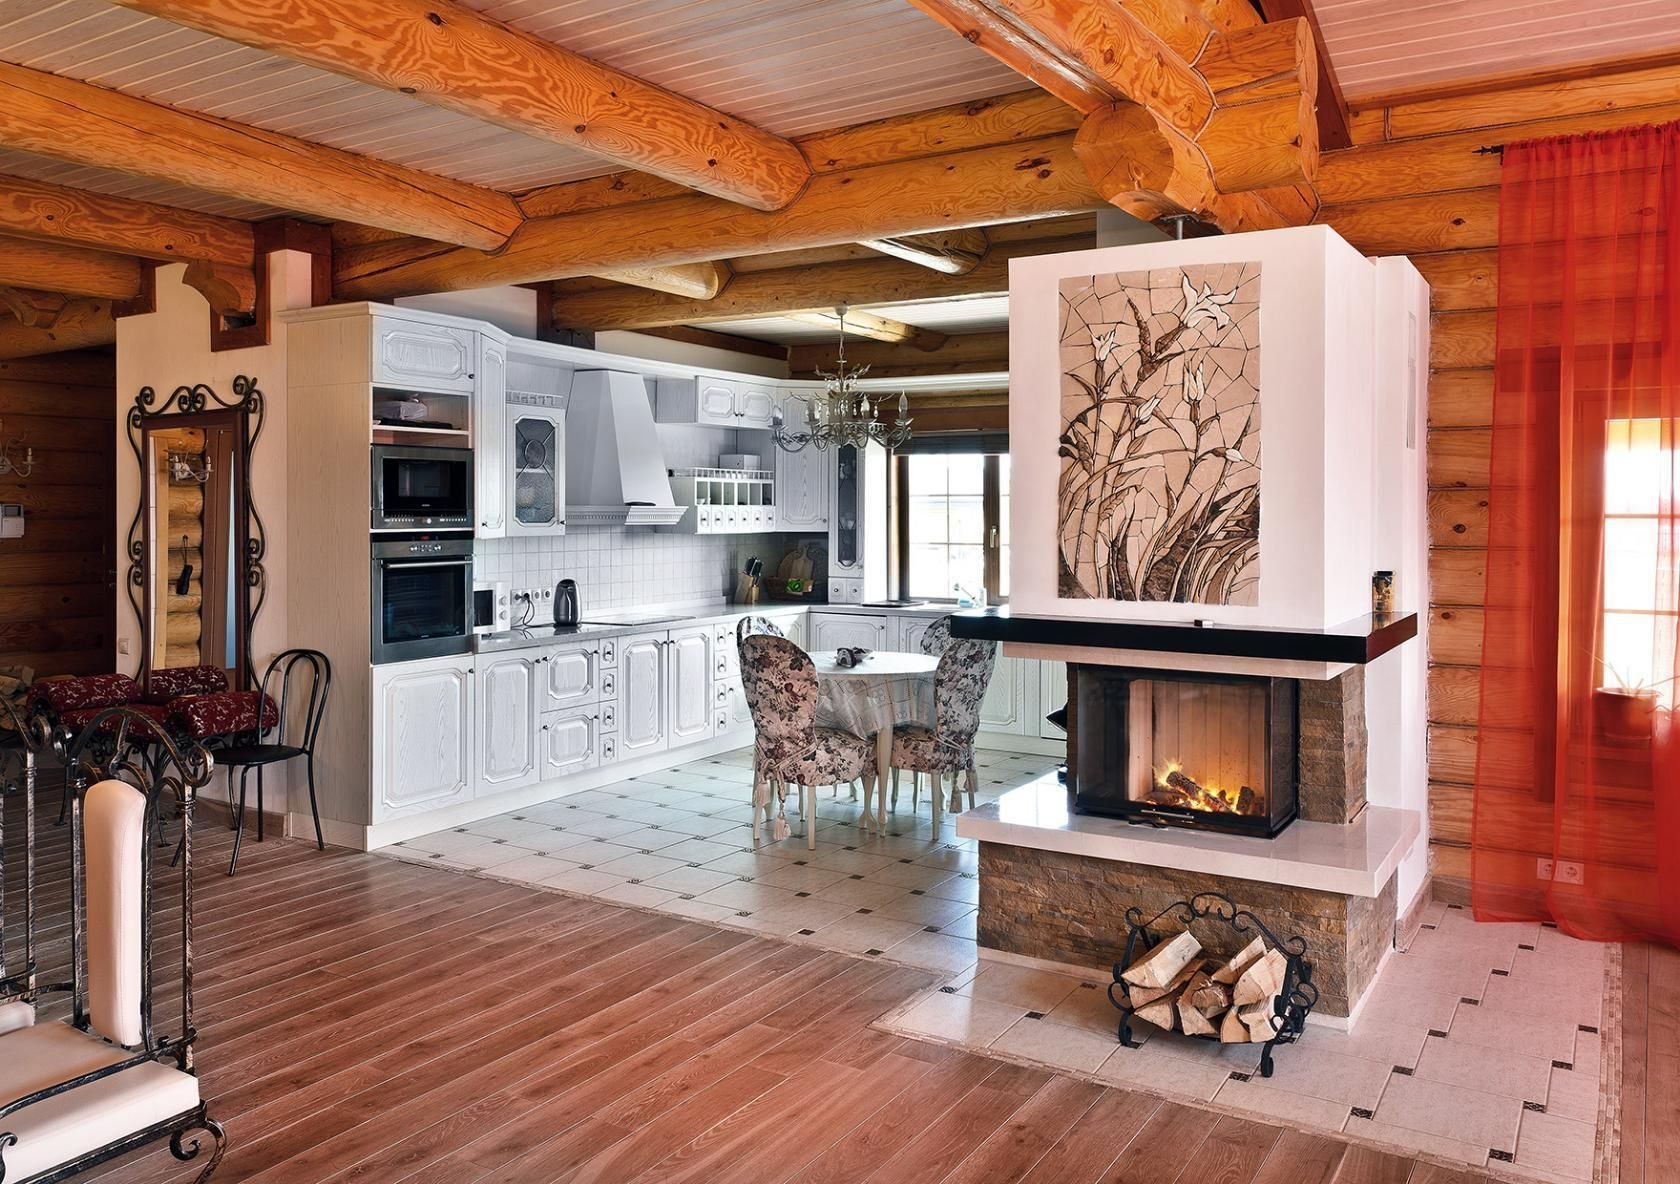 Планировка дома 6 на 6 м с печкой 69 фото русская печь в интерьере деревянного домика, печное отопление, деревенское убранство внутри